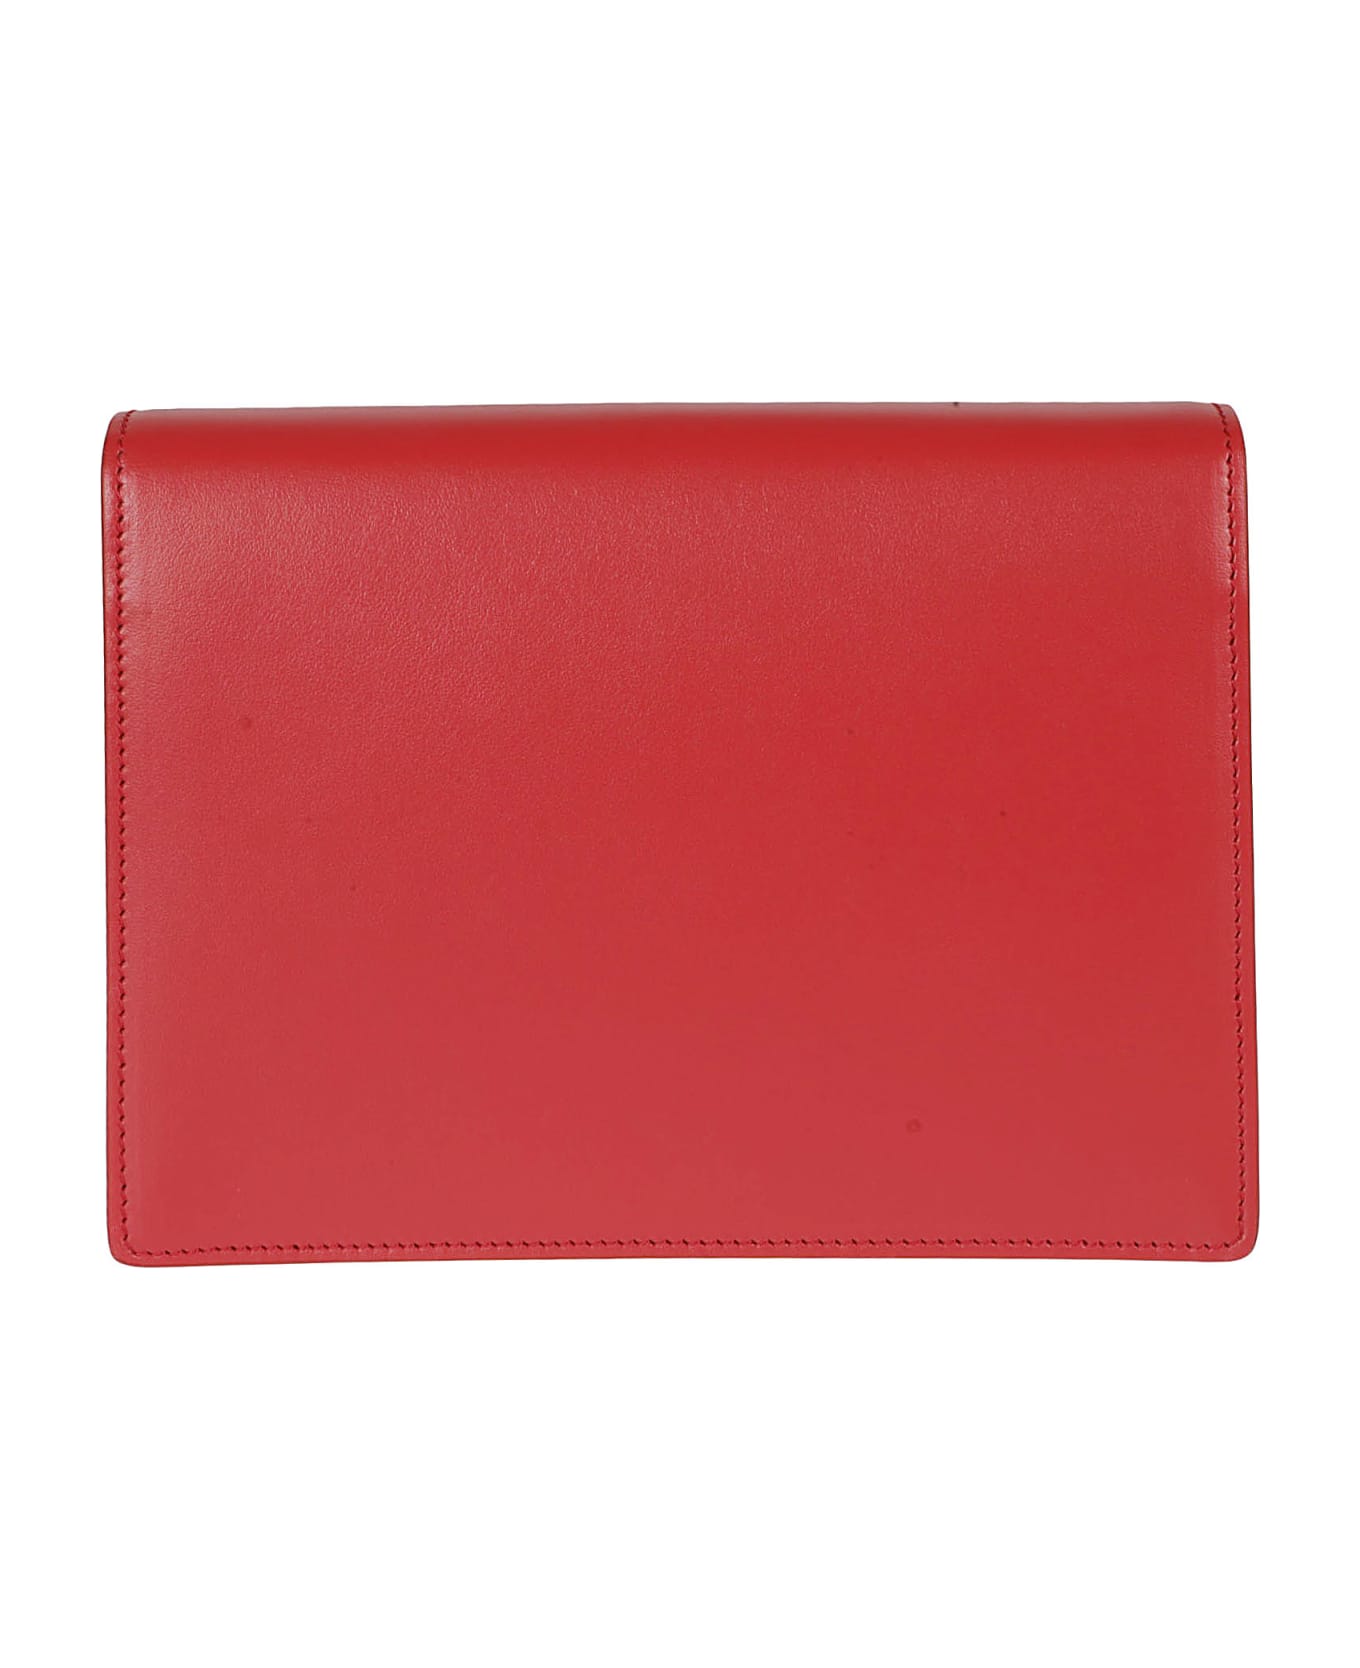 Dolce & Gabbana Logo Quilted Shoulder Bag - Red